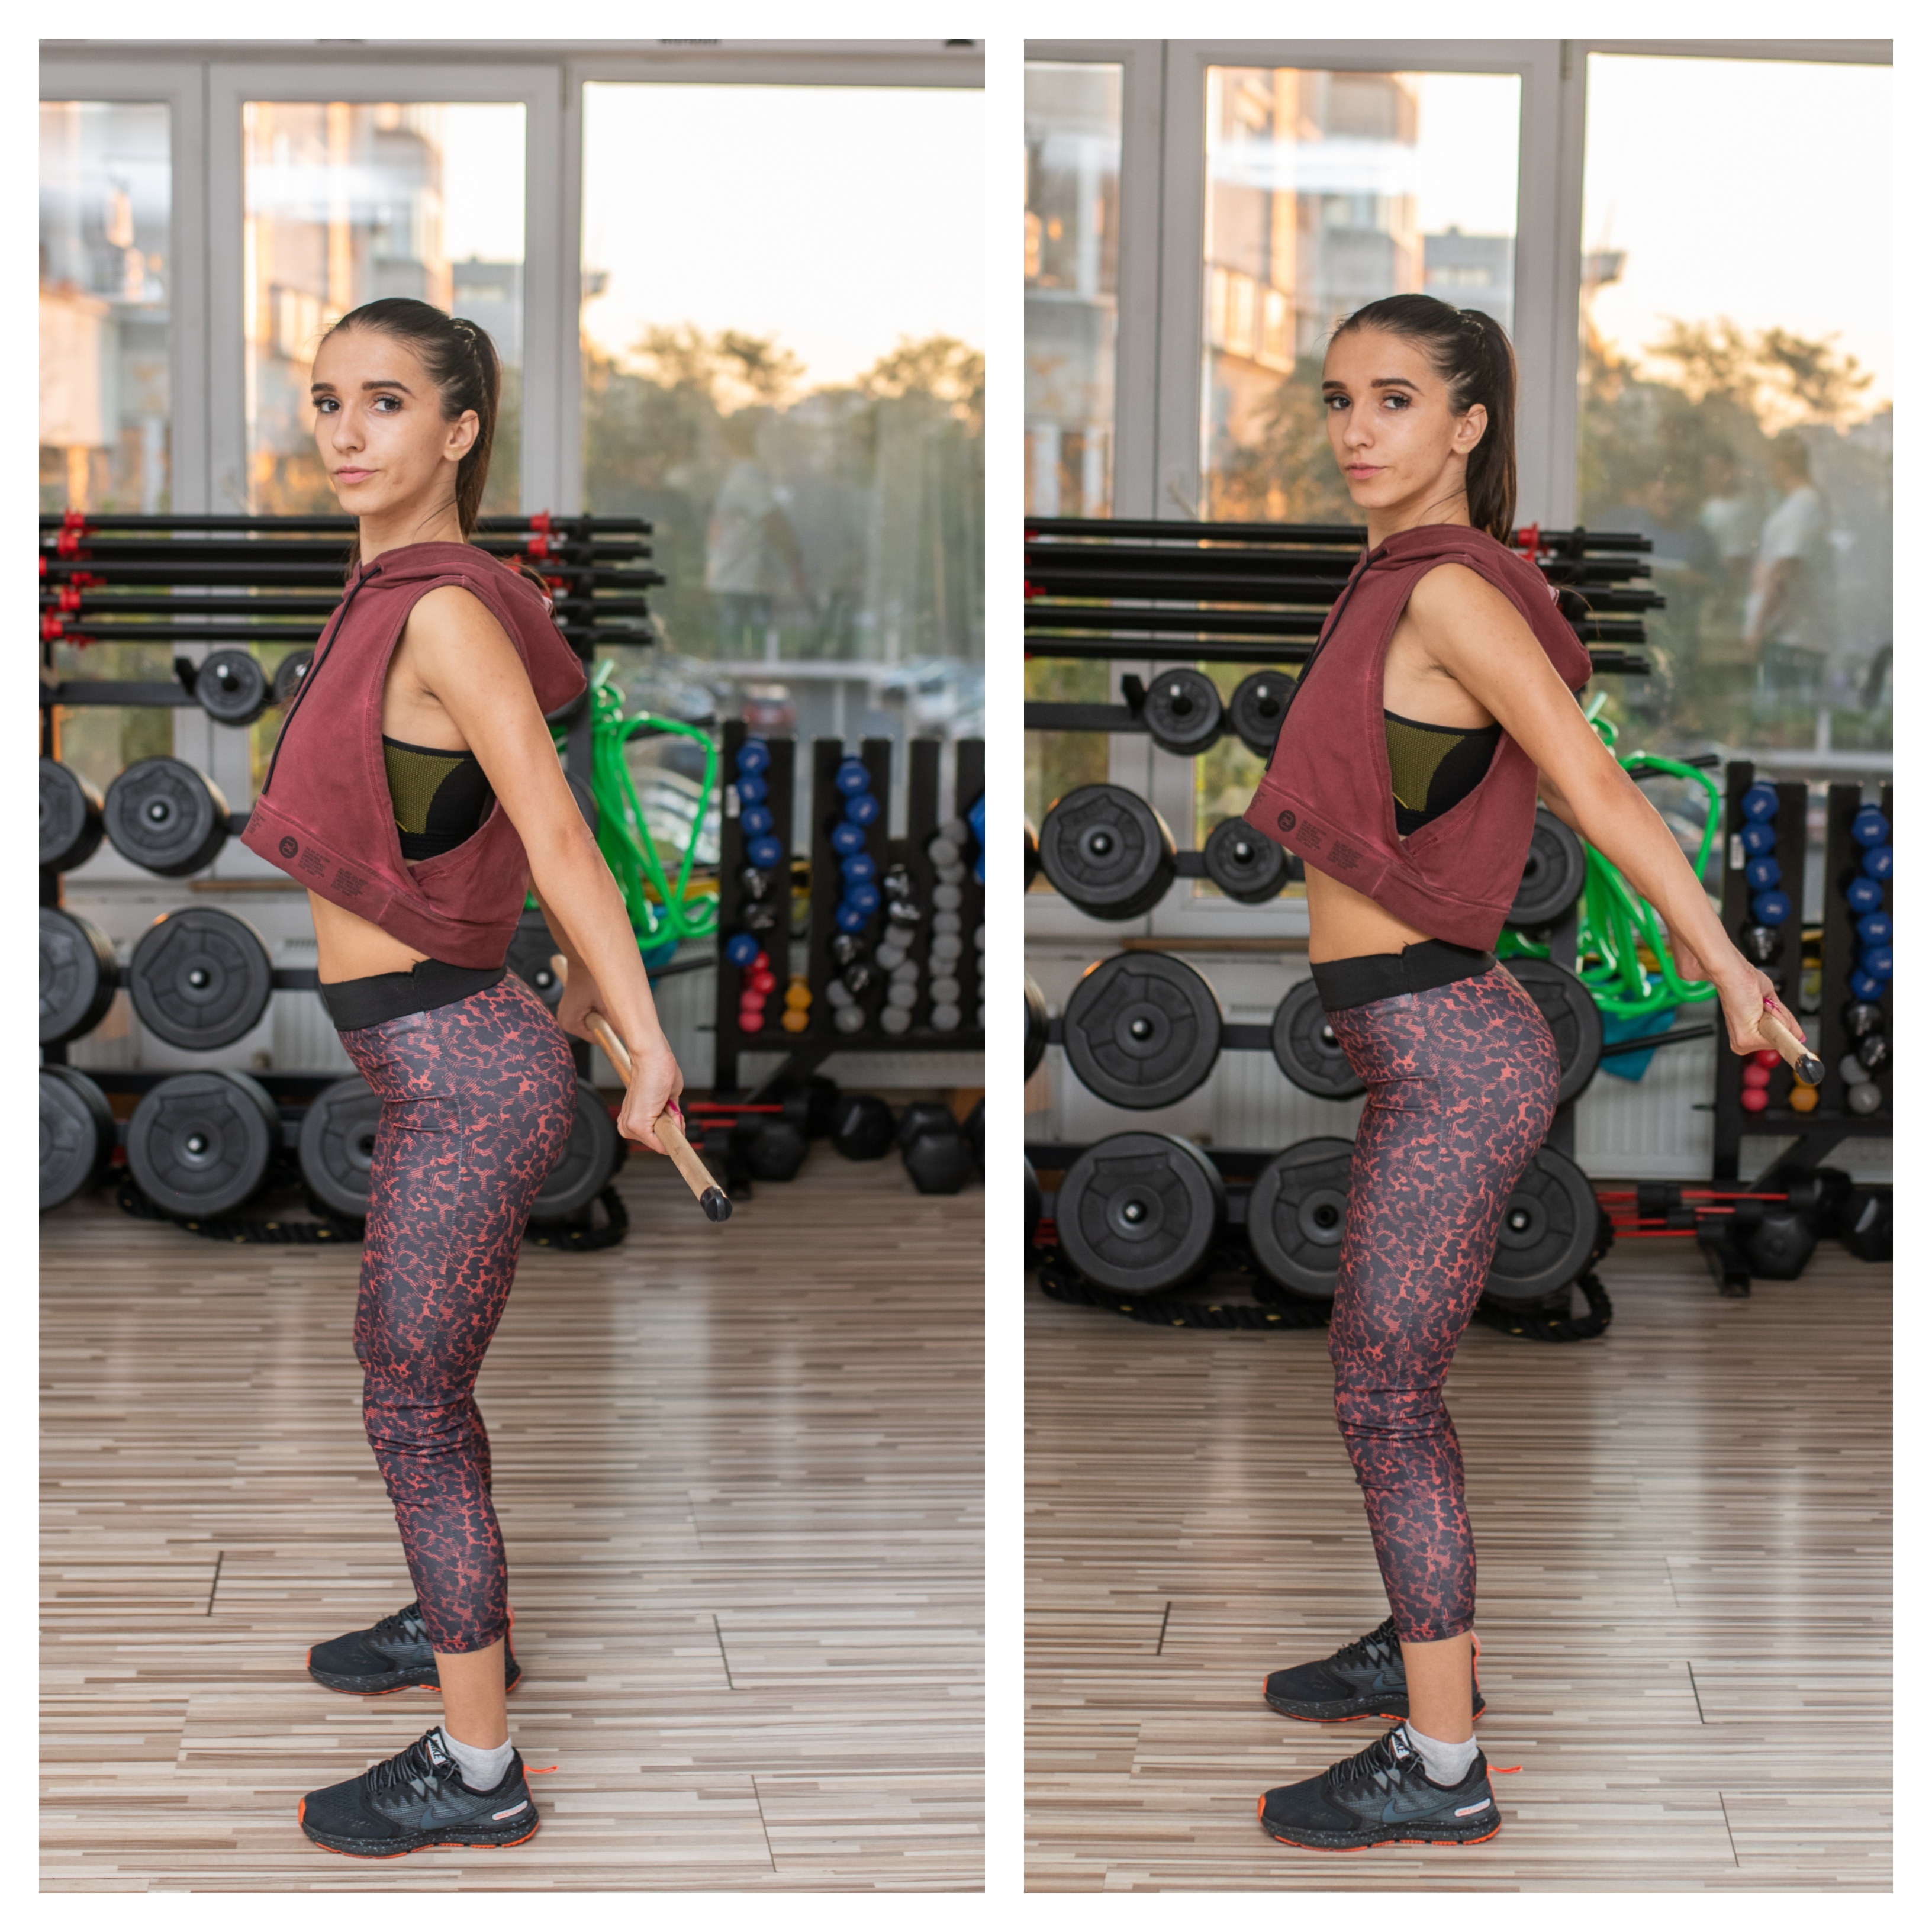 Exerciții simple pentru îmbunătățirea posturii